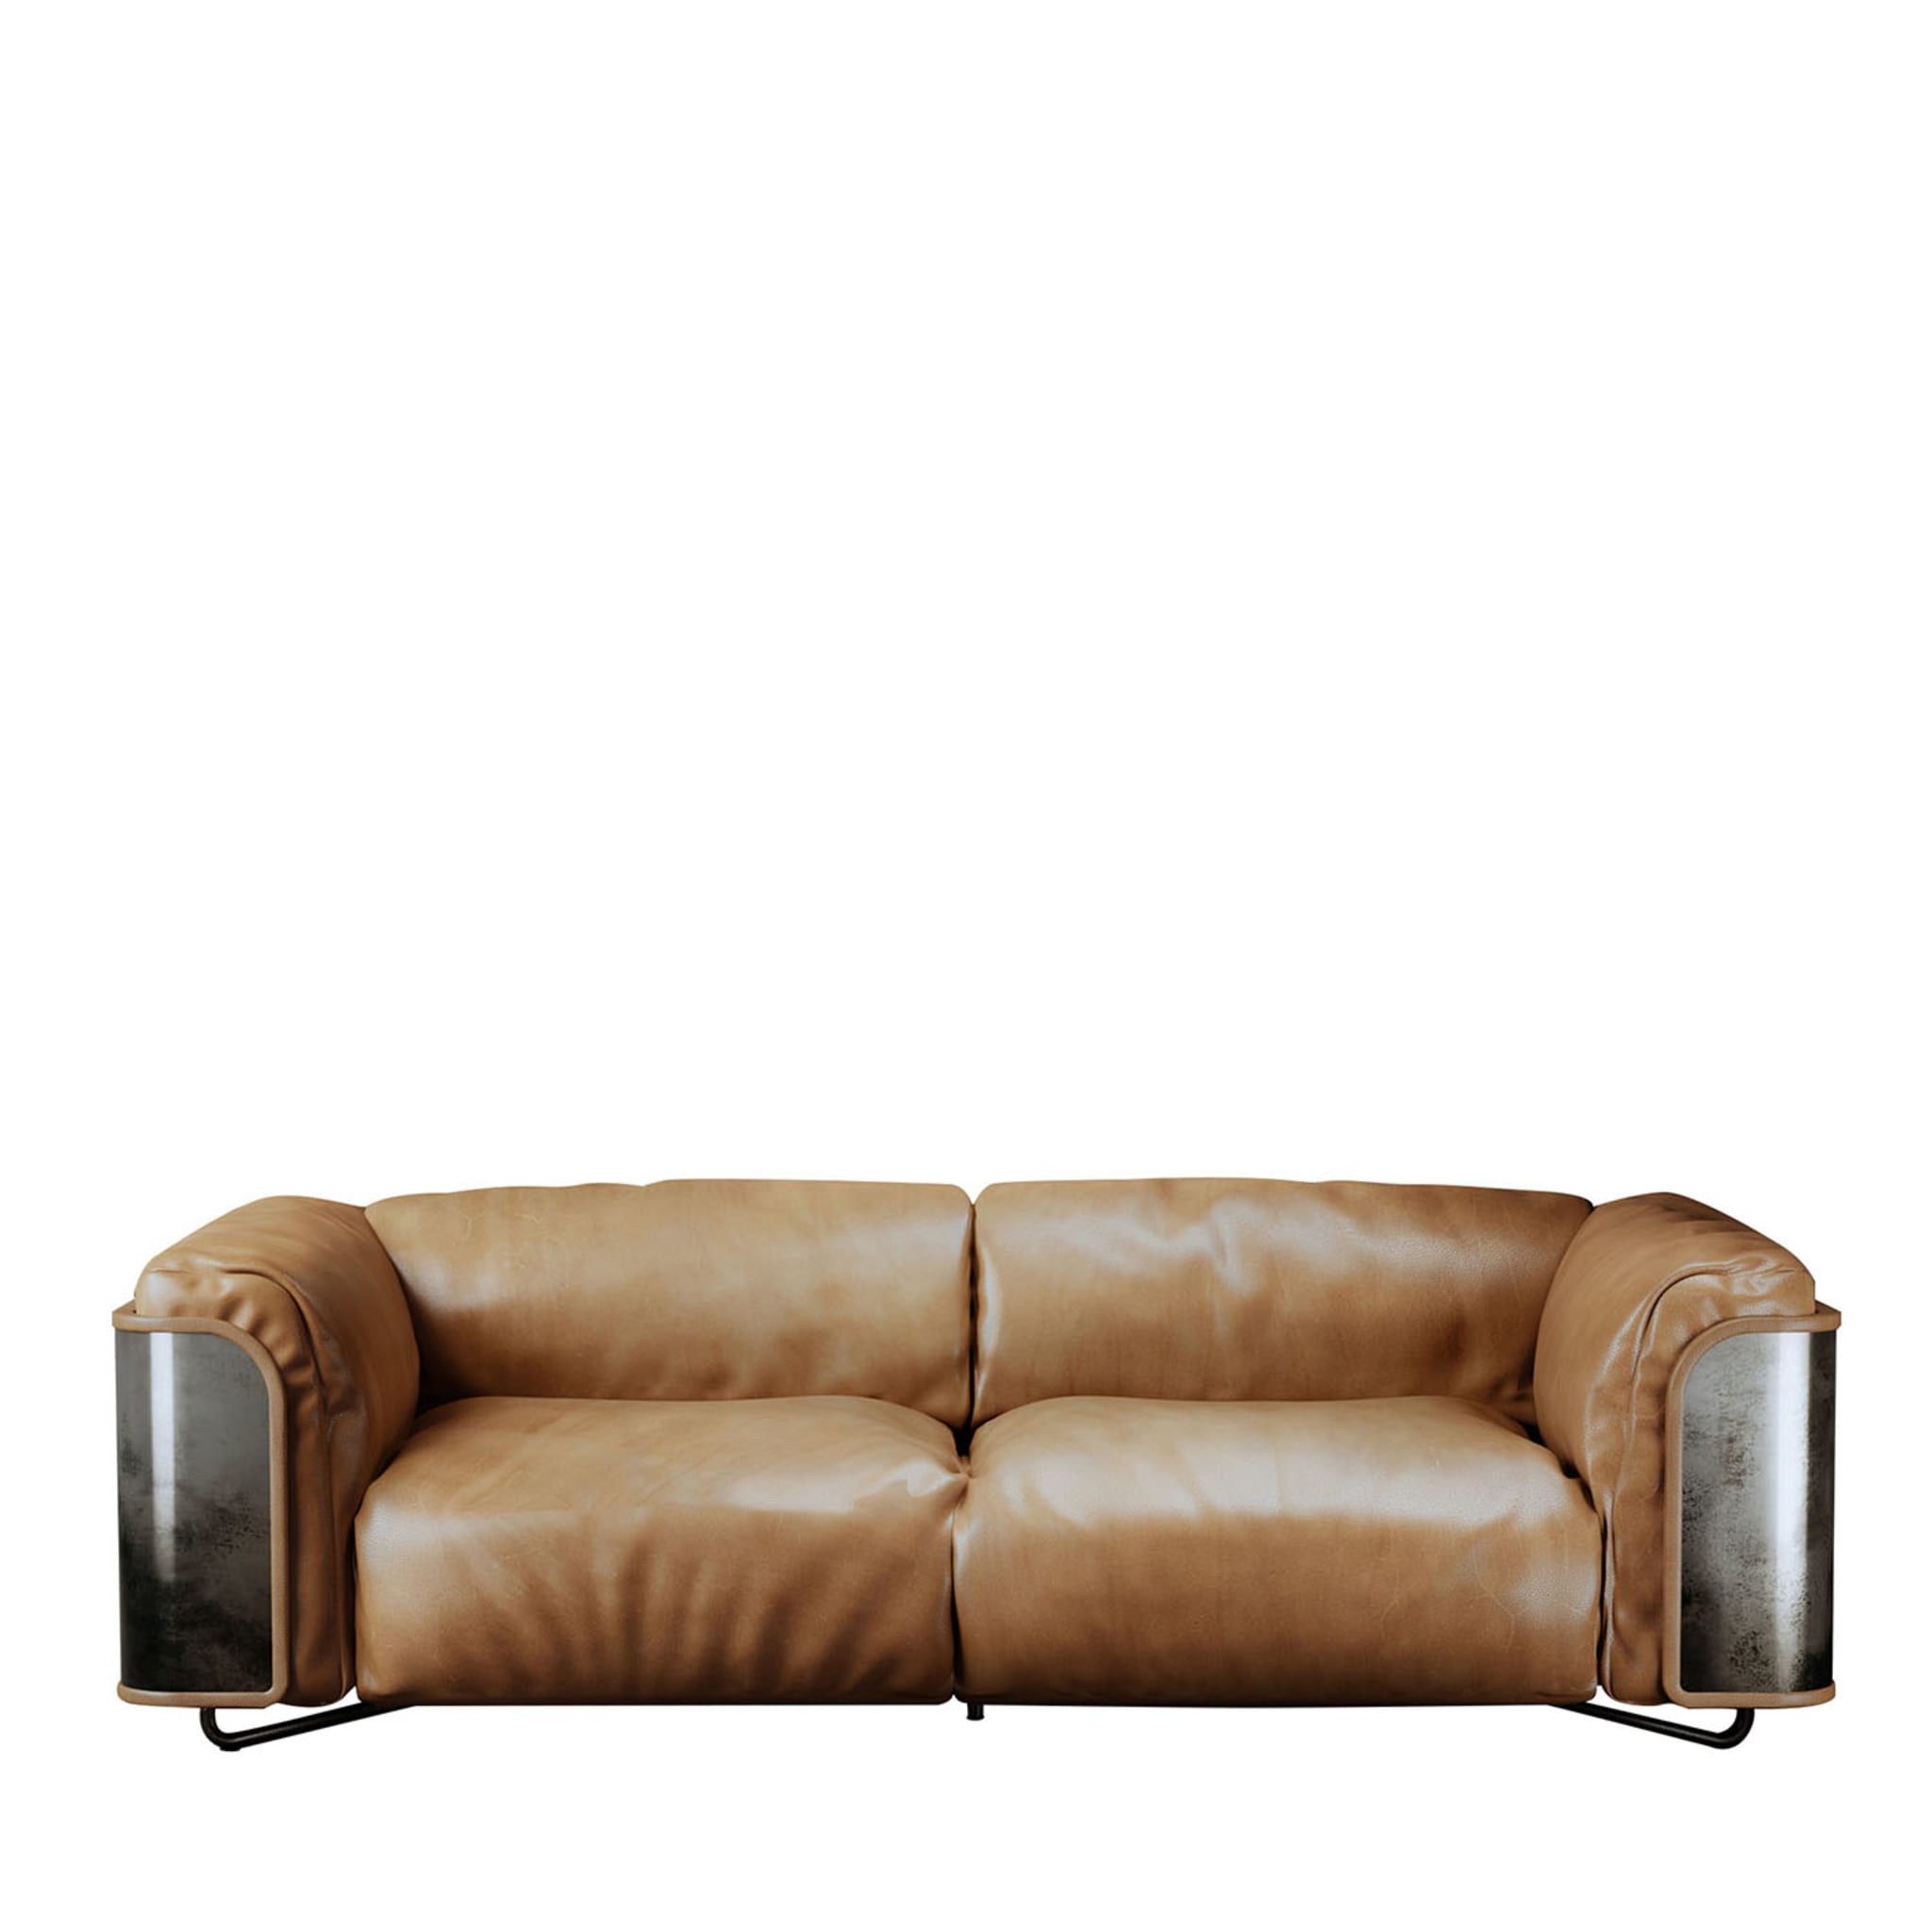 Saint Germain Brown Leather Sofa - Main view